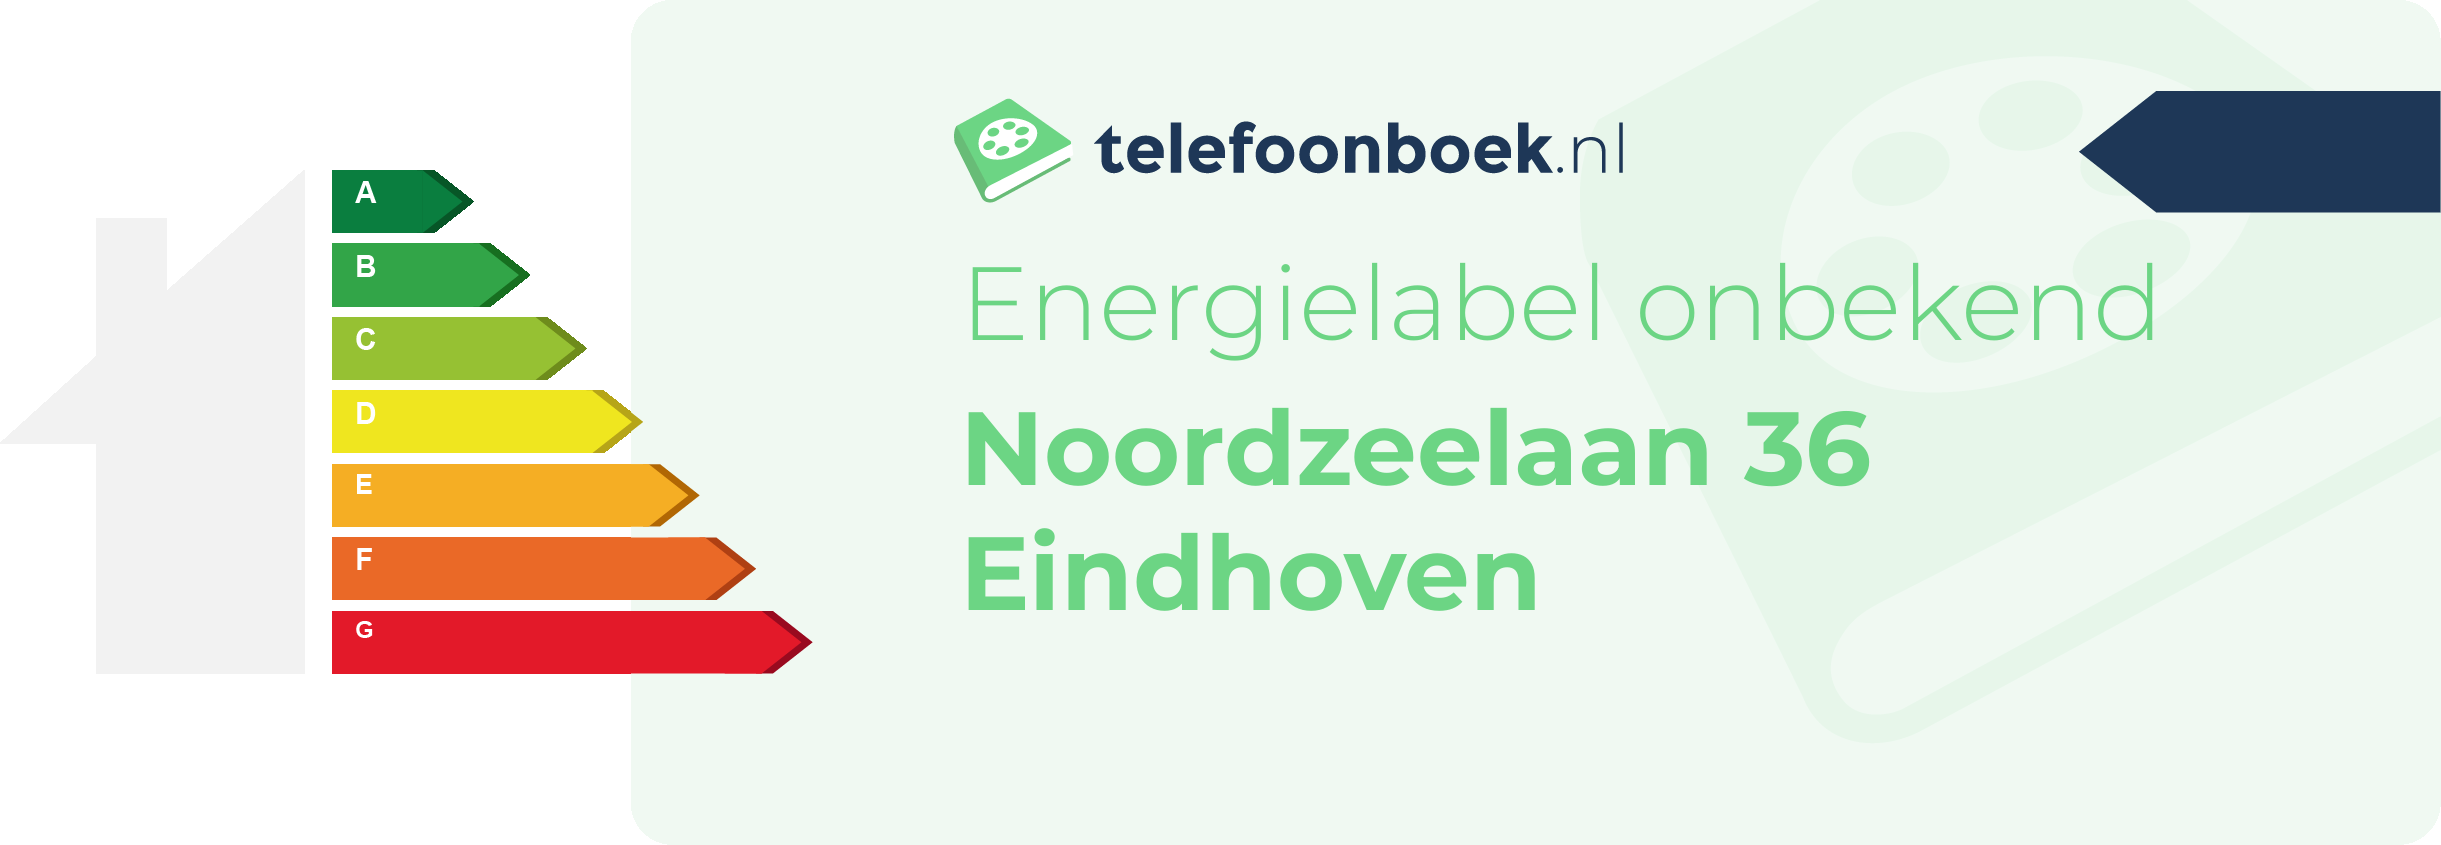 Energielabel Noordzeelaan 36 Eindhoven